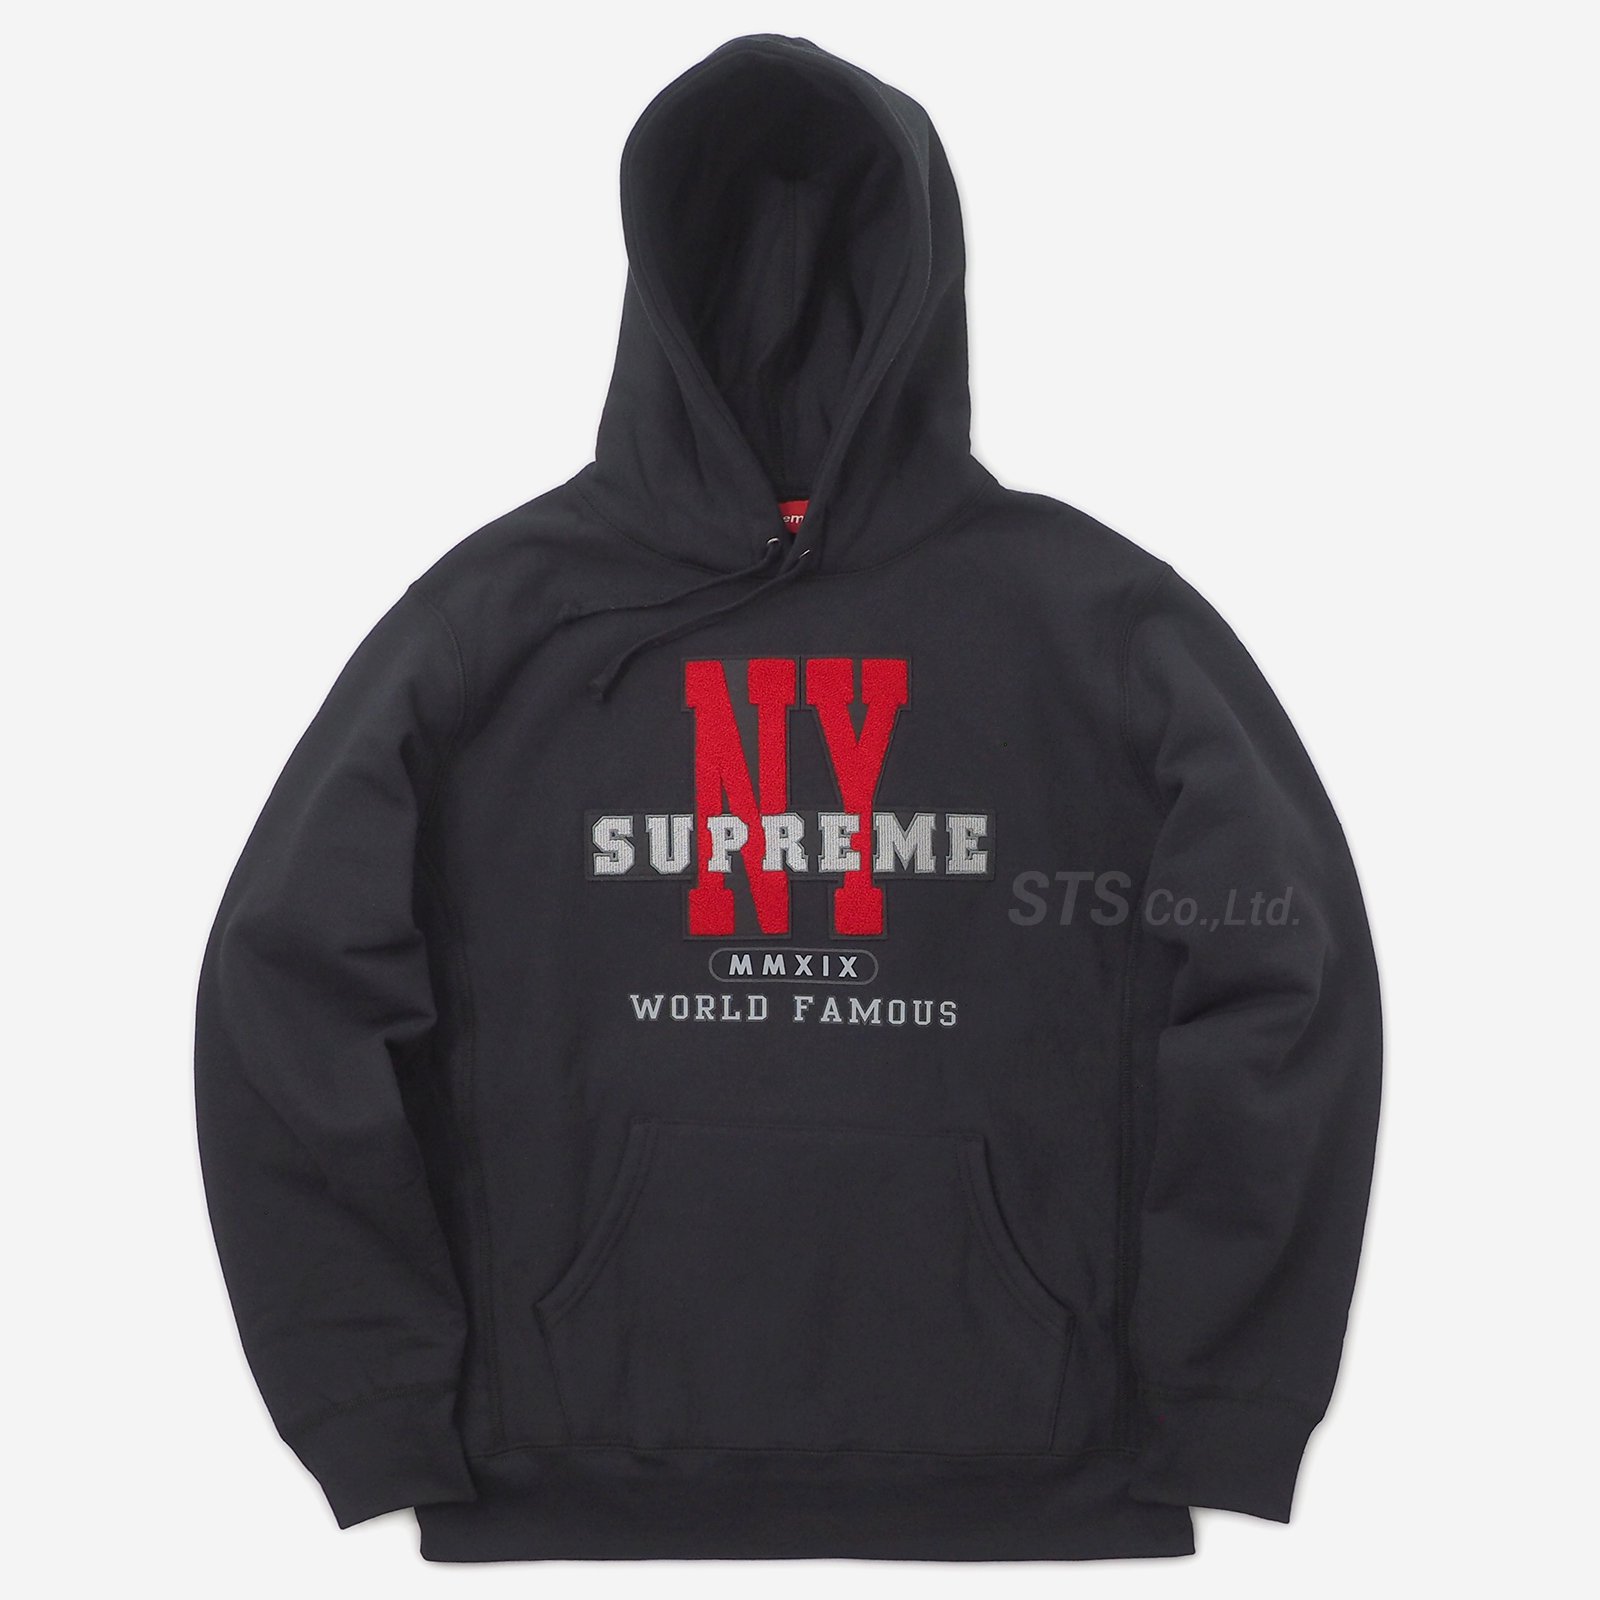 新品supreme22FW US-NY Hooded sweatshirts